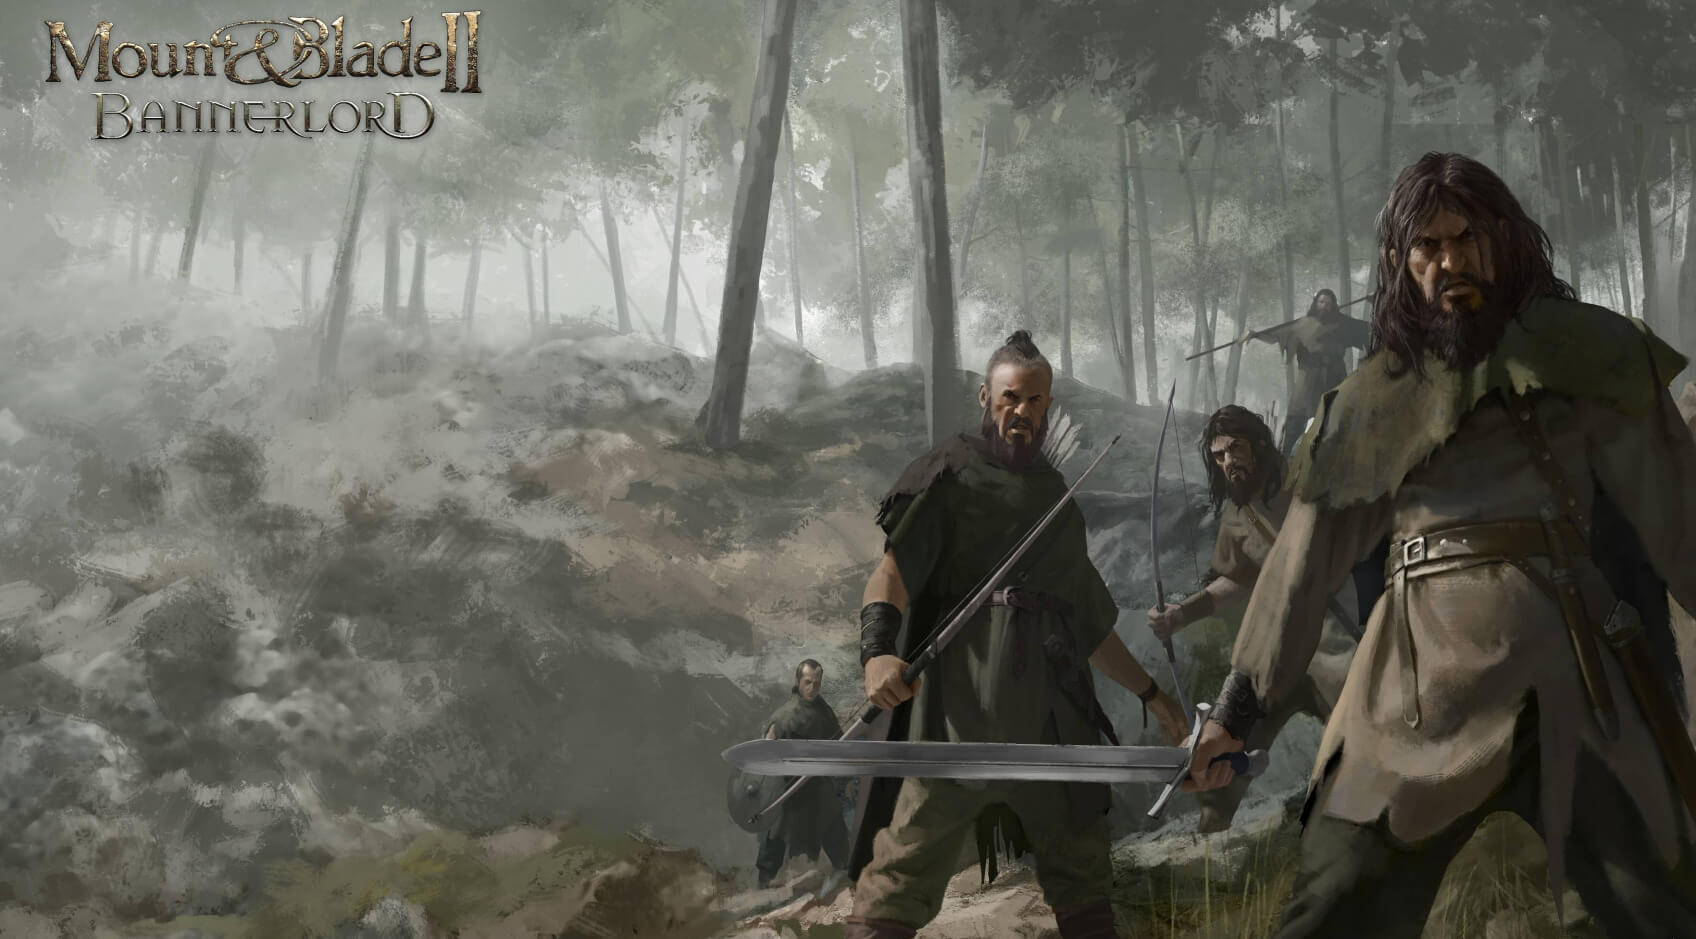 يوجد الآن Dismemberment Mod لـ Mount & Blade II: Bannerlord يمكنك تنزيله 2